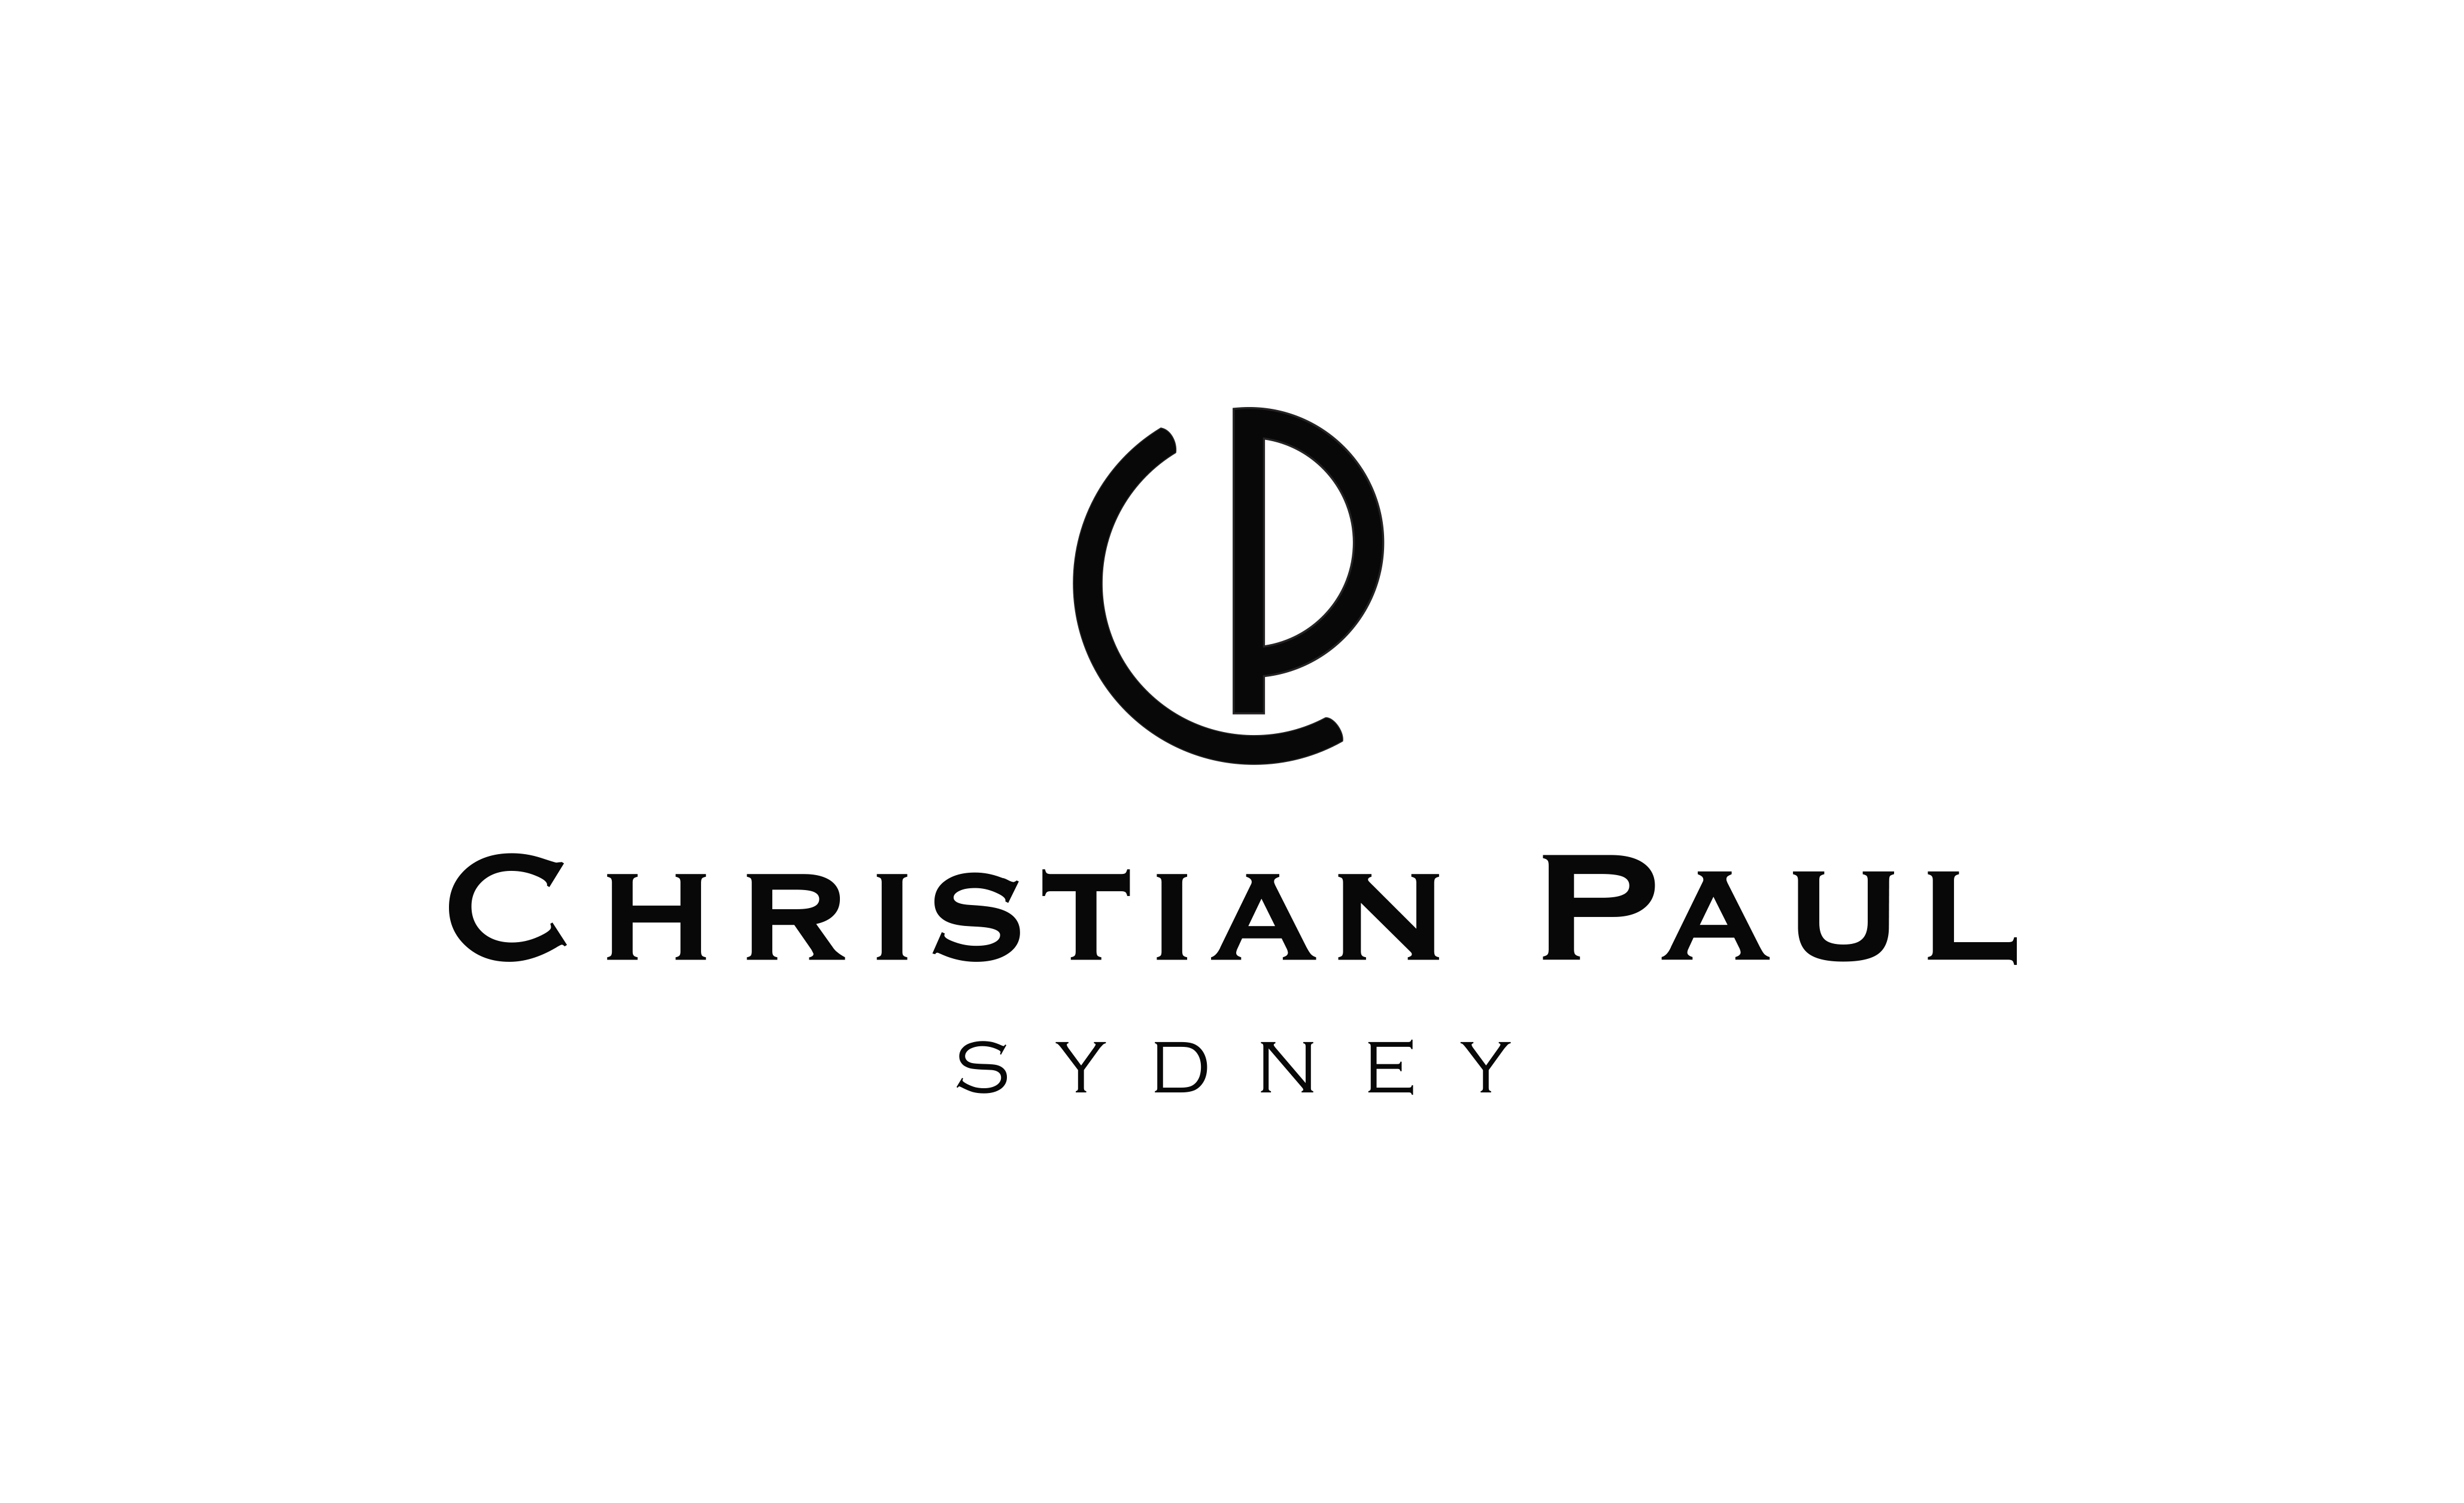 White Christian Logo - Christian Paul Sydney - Christian Paul